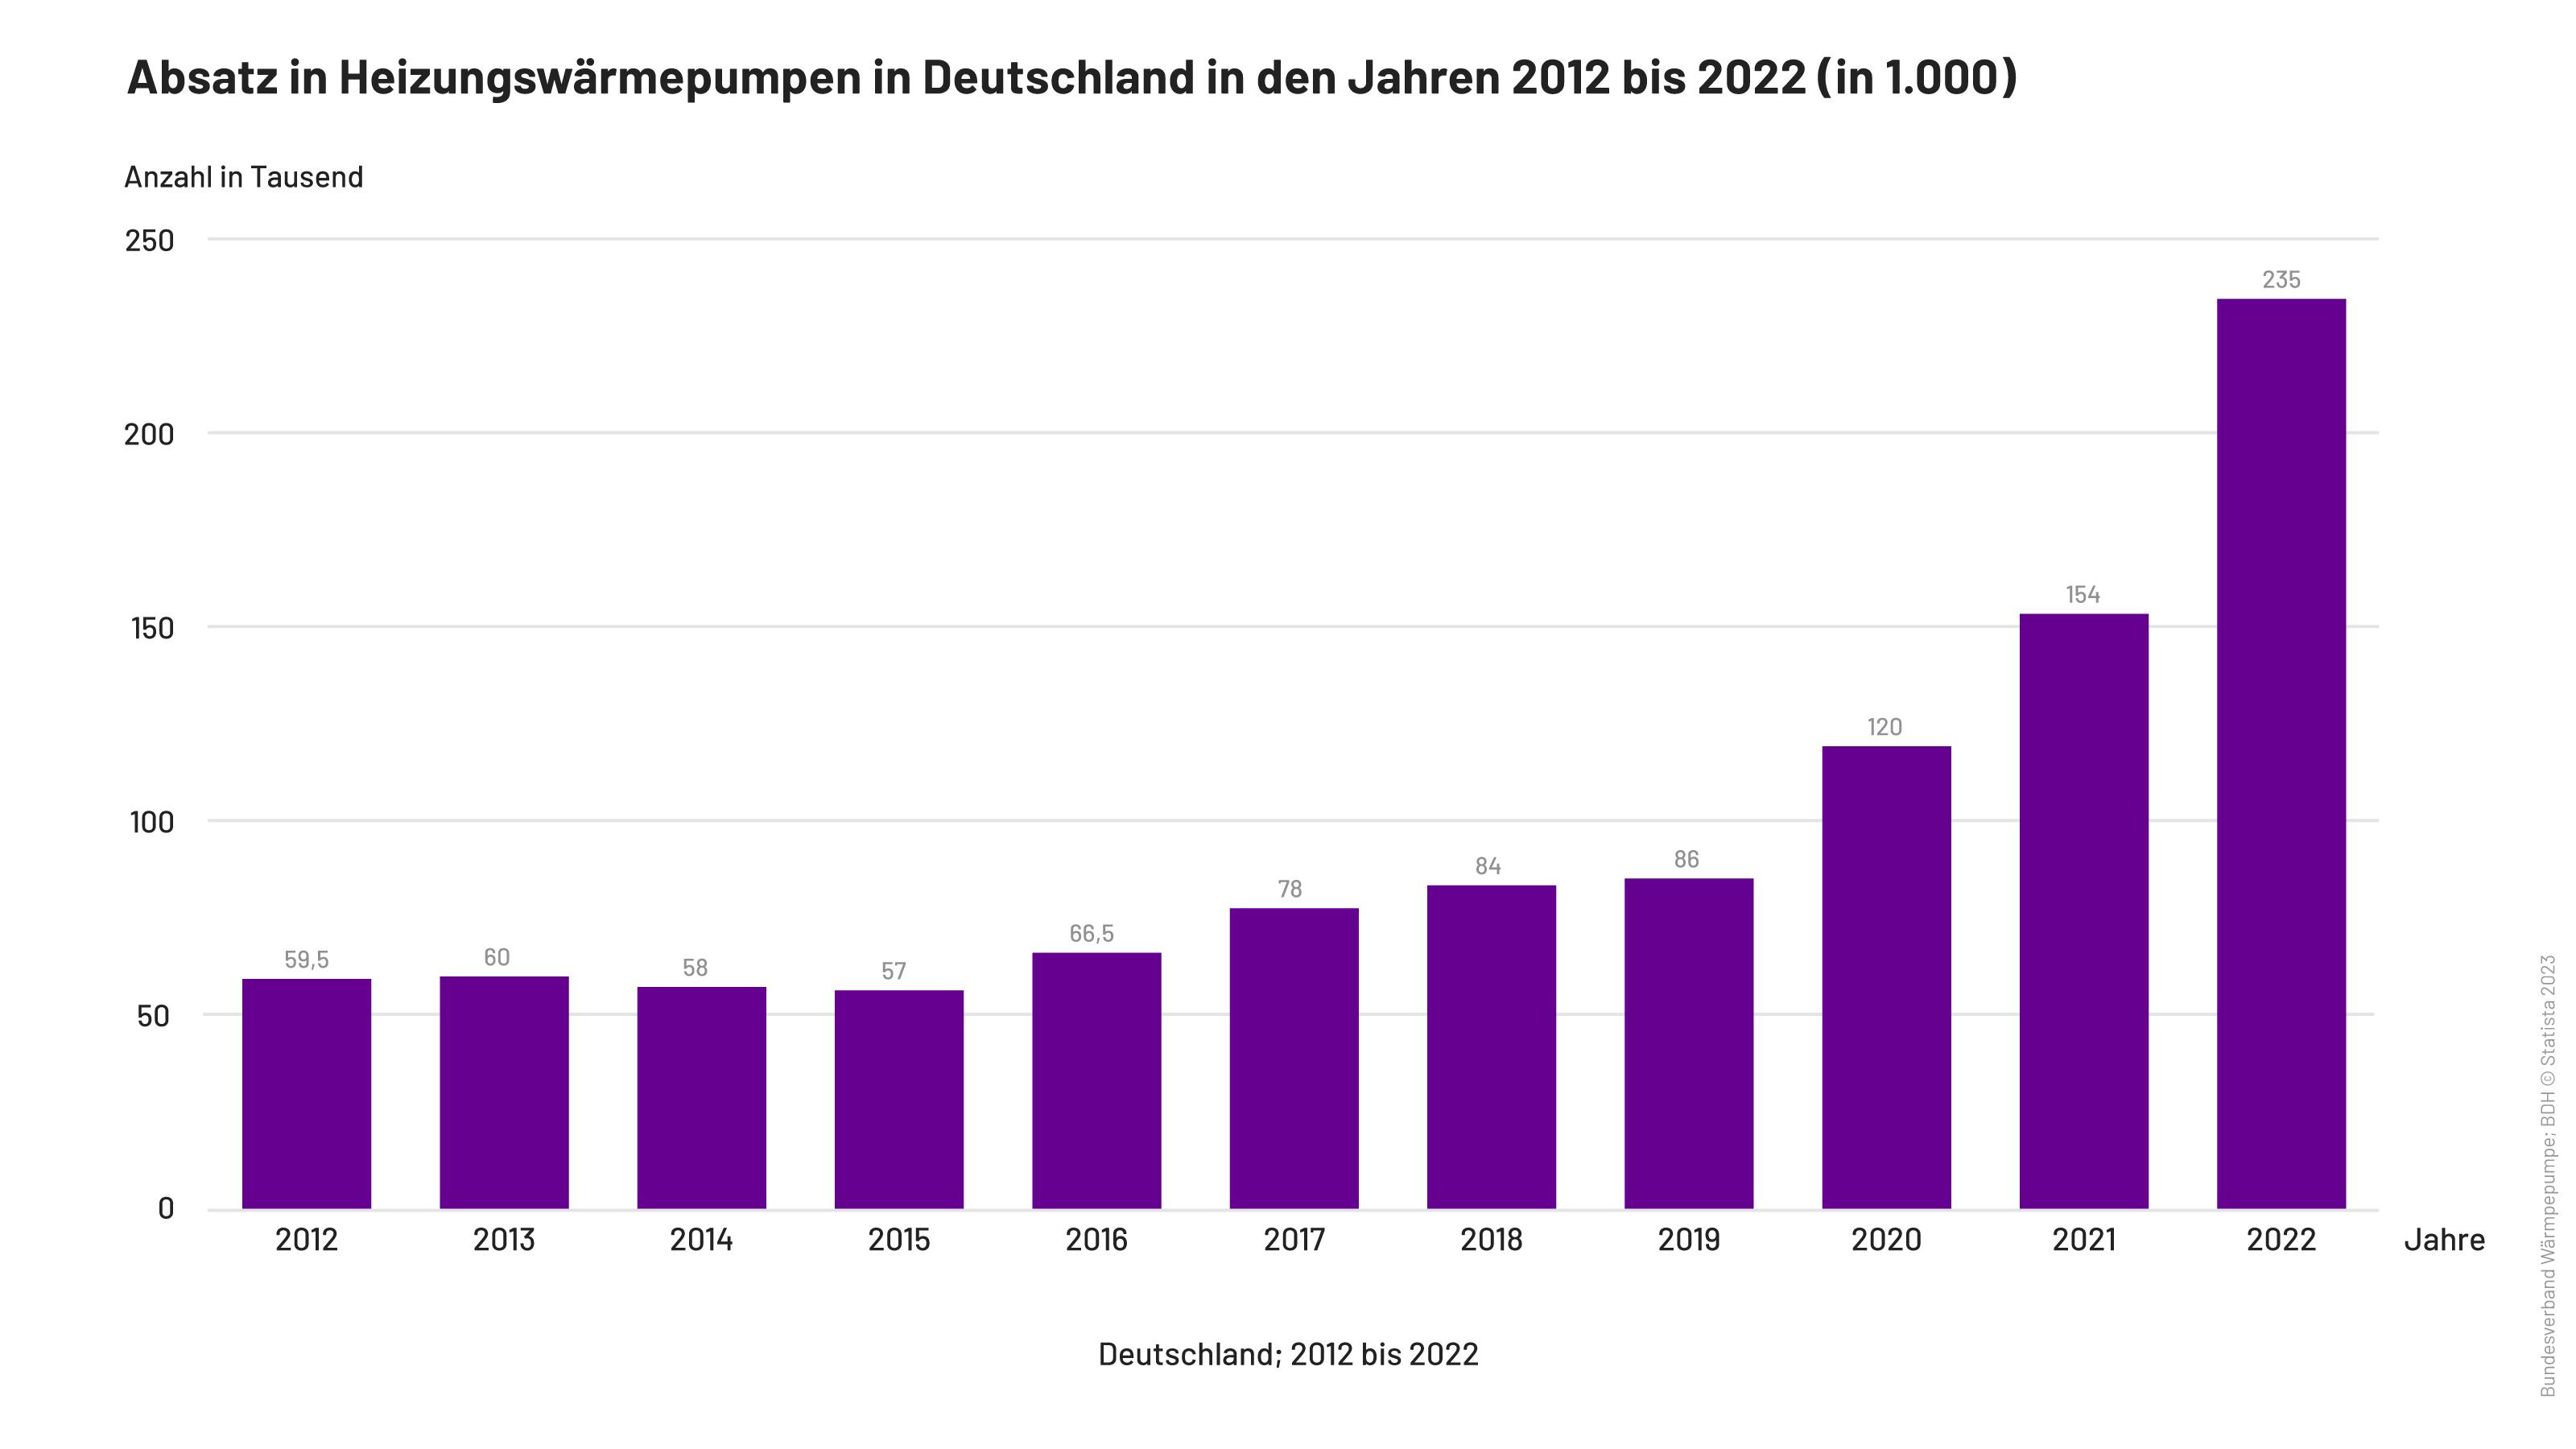 Absatz von Heizungswärmepumpen (d.h. Luft/Wasser-Wärmepumpen sowie erdgasgekoppelte Wärmepumpen) in Deutschland in den Jahren 2012 bis 2022